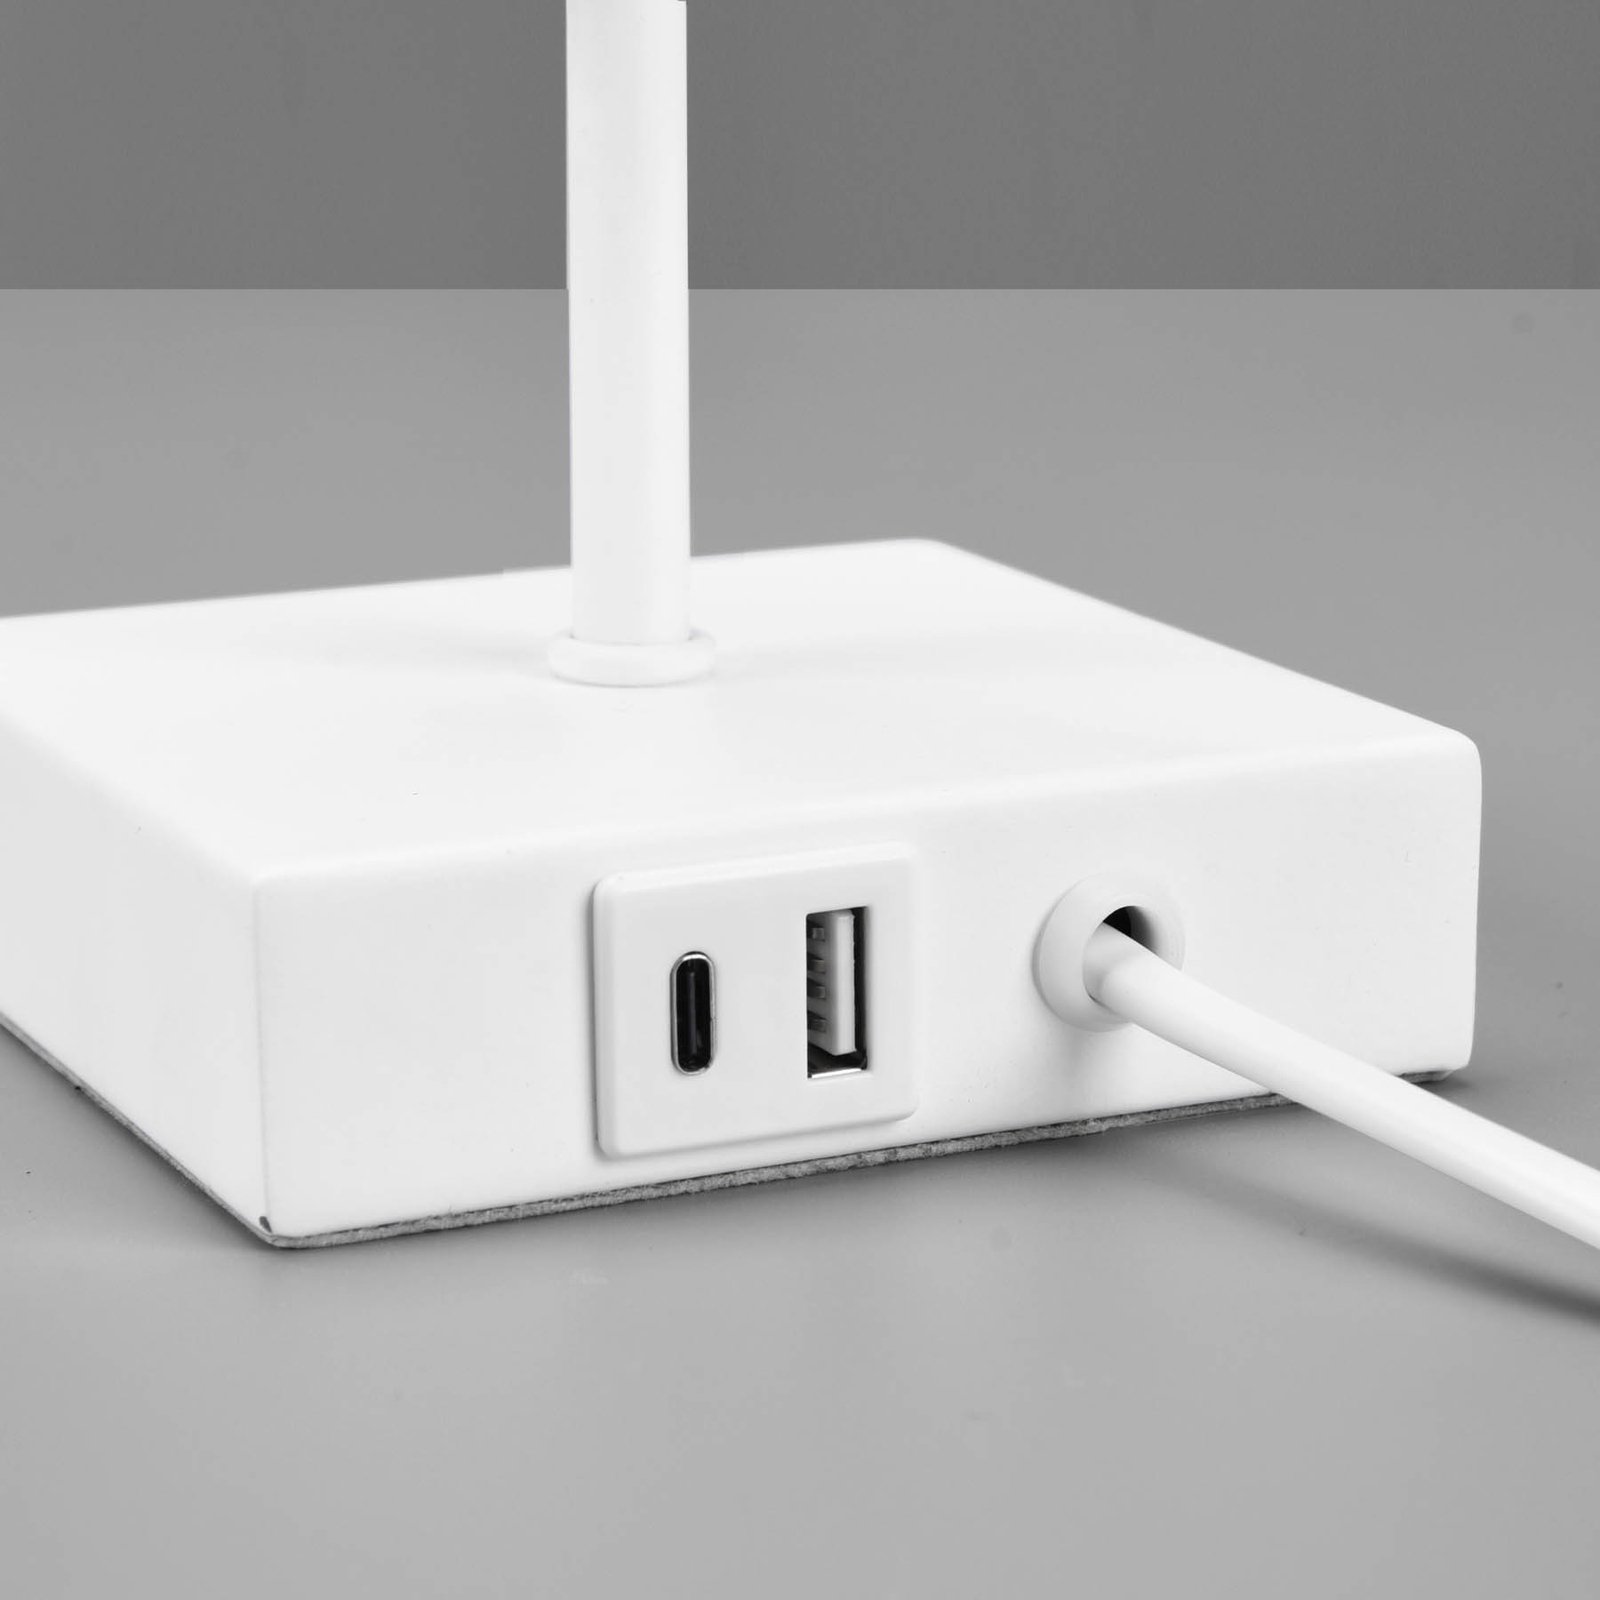 Stolní lampa Ole s USB přípojkou, bílá/bílá